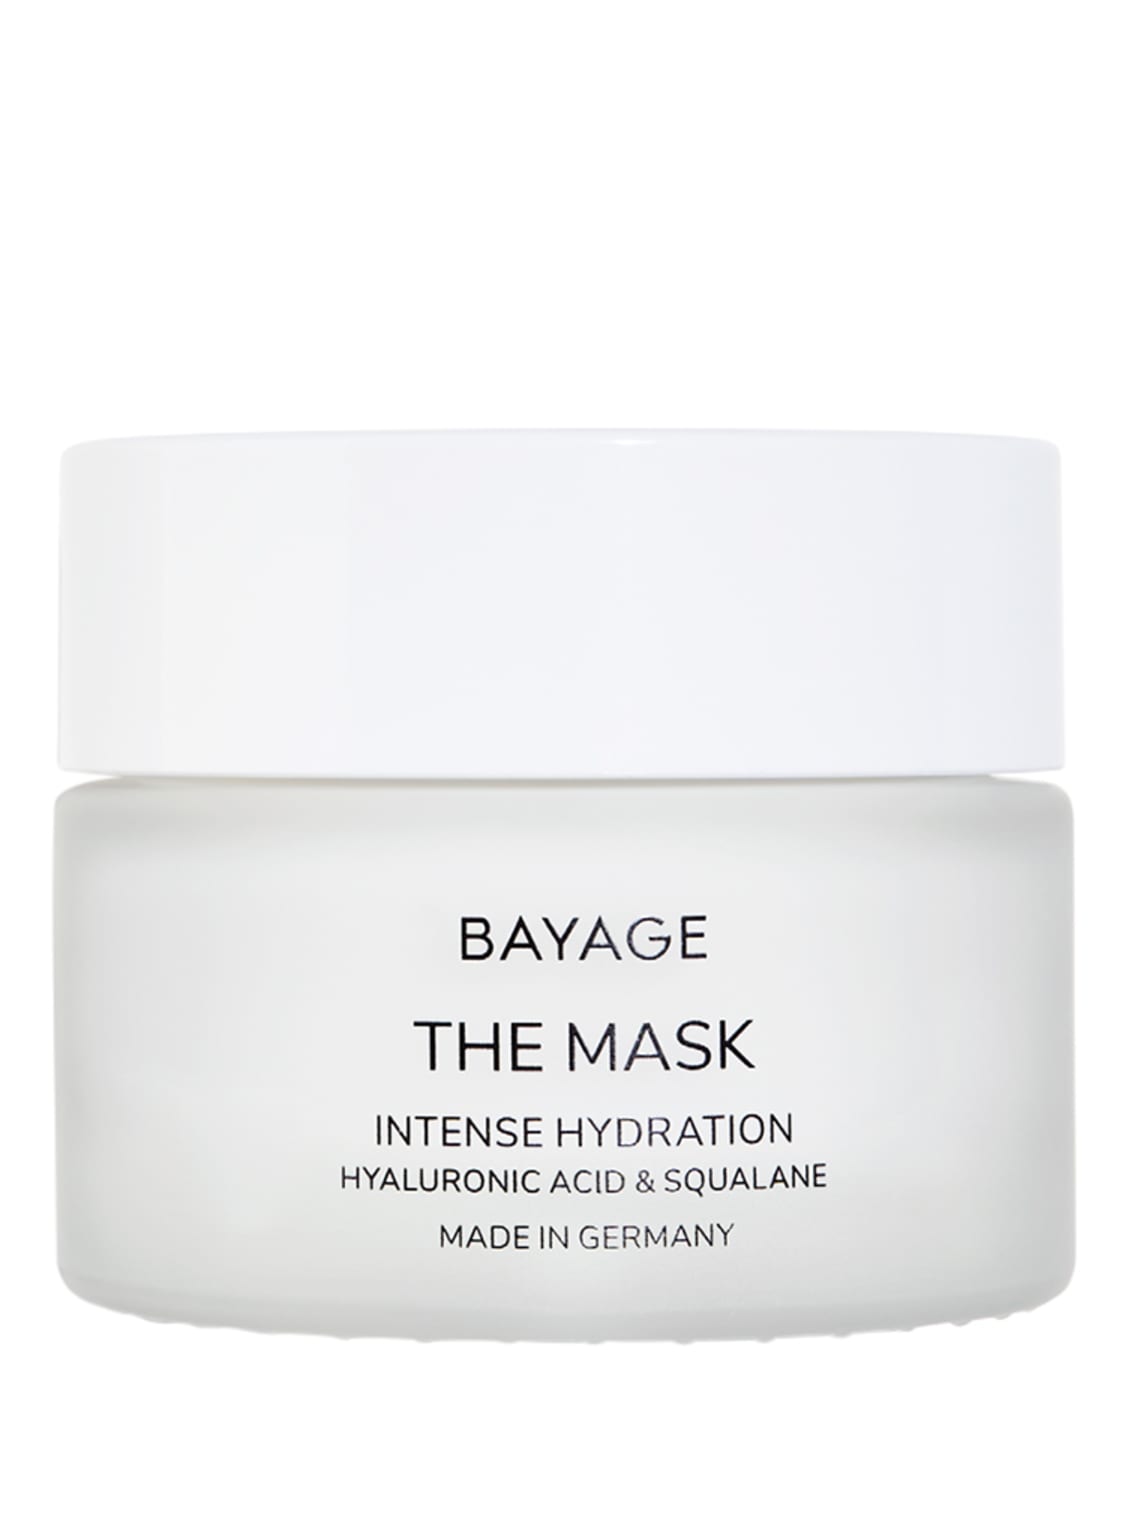 Image of Bayage The Mask Intense Hydration Hyaluronic Acid & Squalane 50 ml